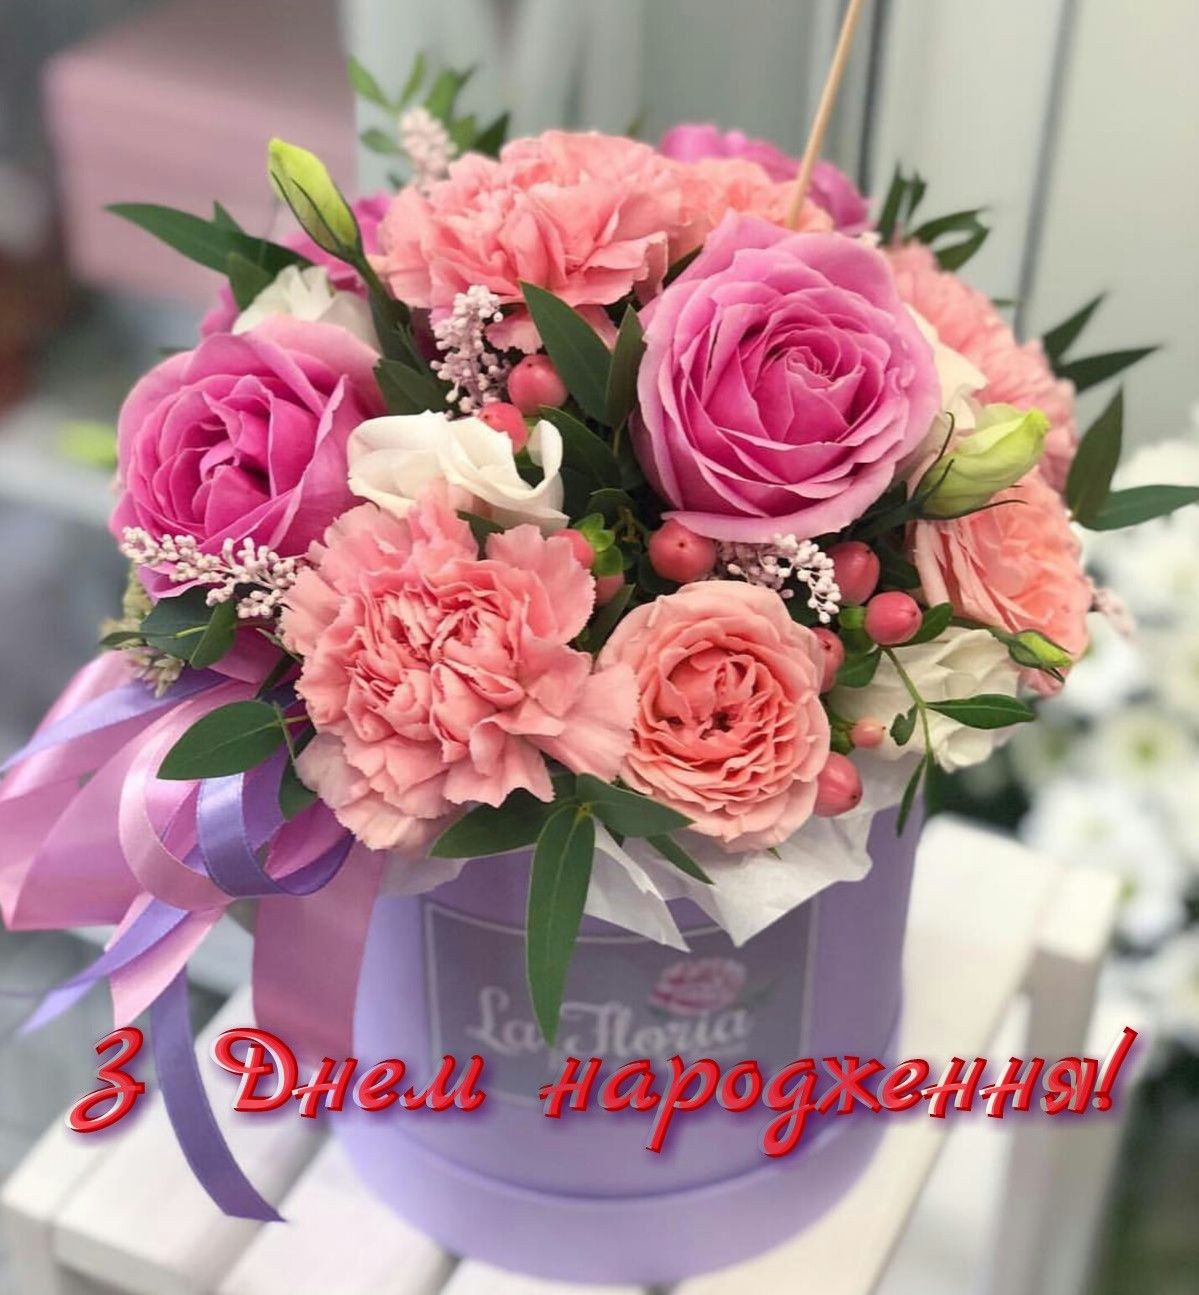 Привітання з днем народження мужчині українською мовою
